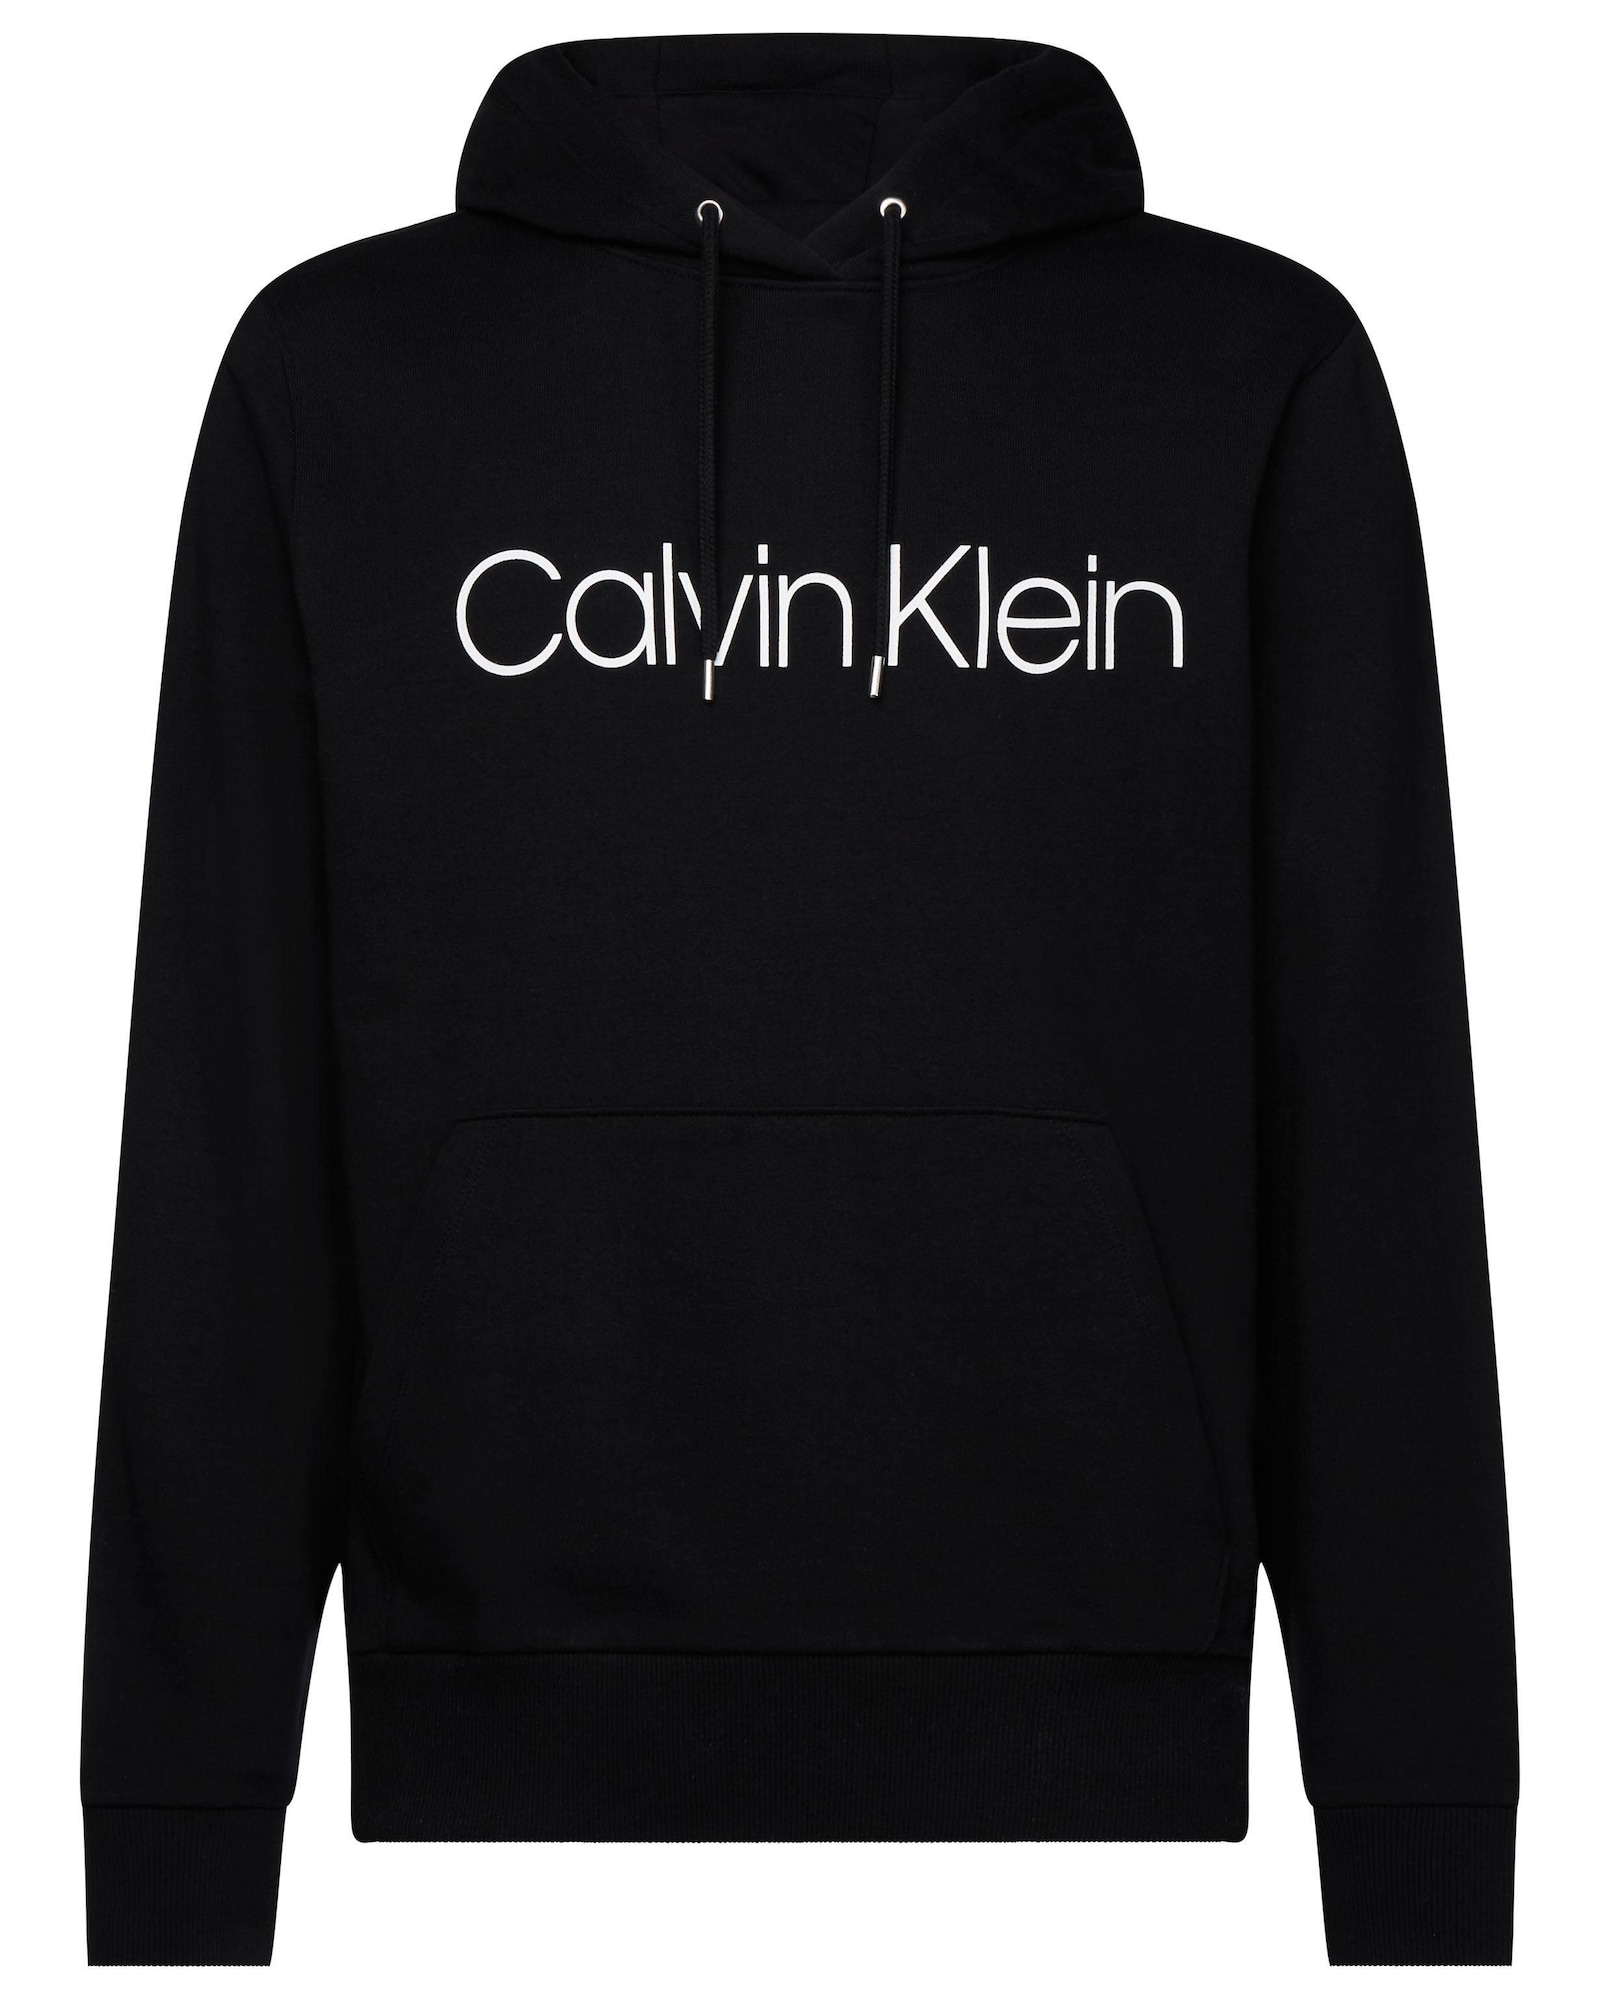 Calvin Klein Tréning póló  fehér / fekete